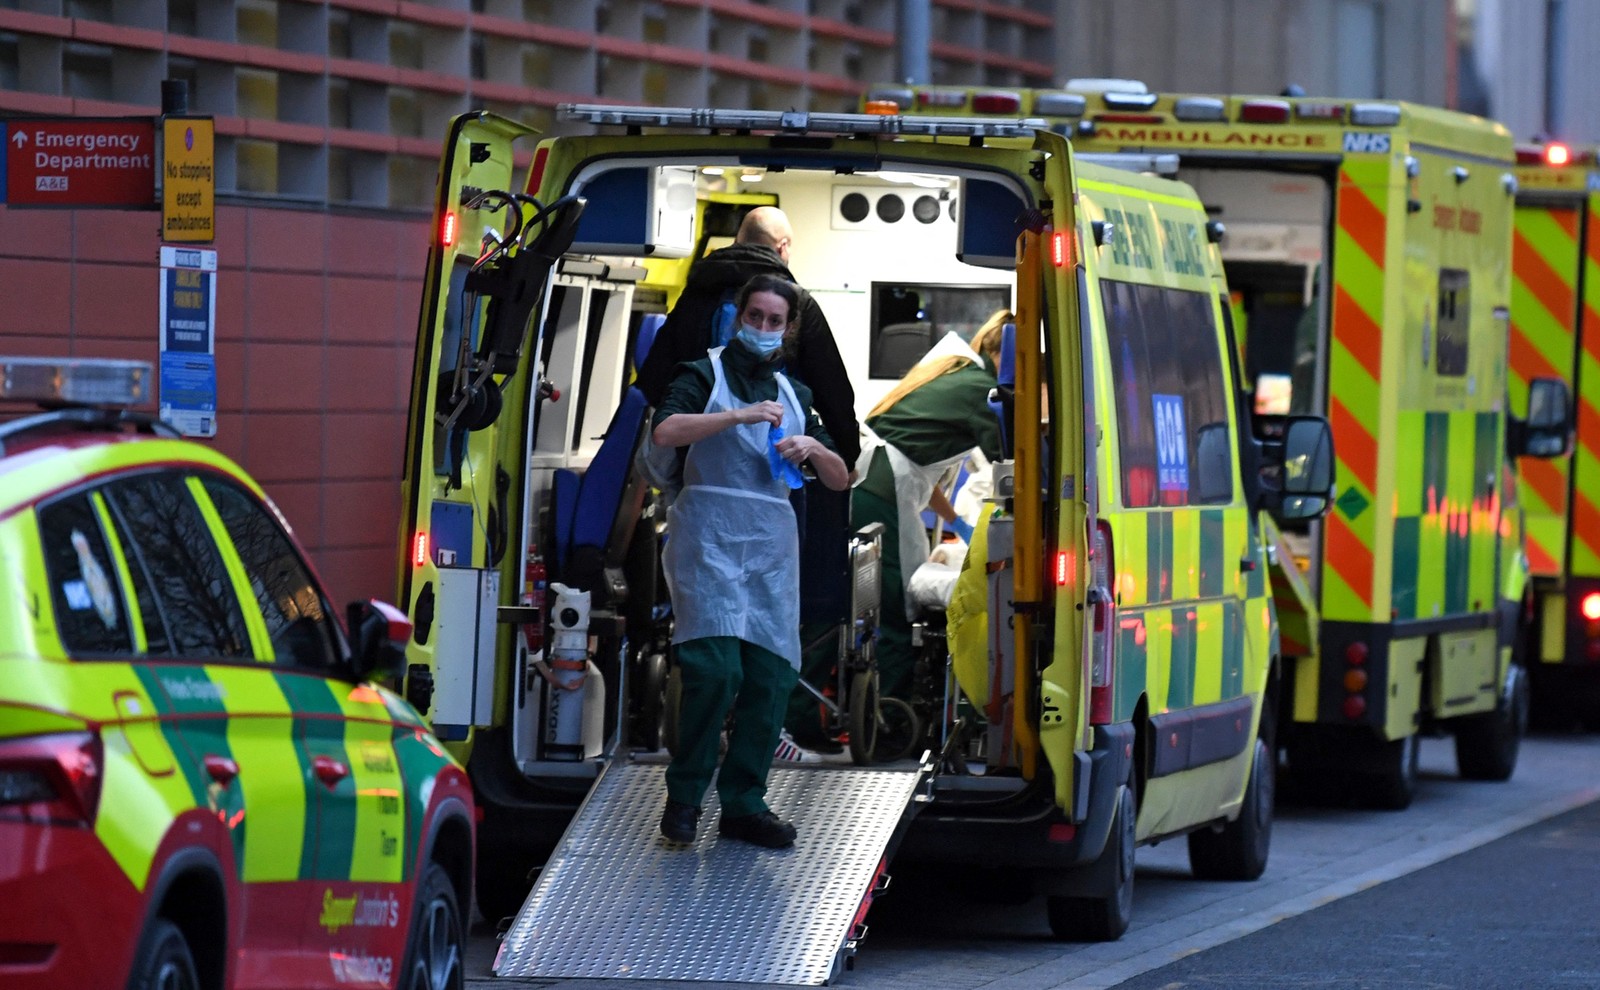 Paramédicos trabalham dentro de uma ambulância estacionada em frente ao Royal London Hospital, no leste de Londres. Capital da Inglaterra enfrenta grave escassez de pessoal causada pelo surto de ÔmicronAFP